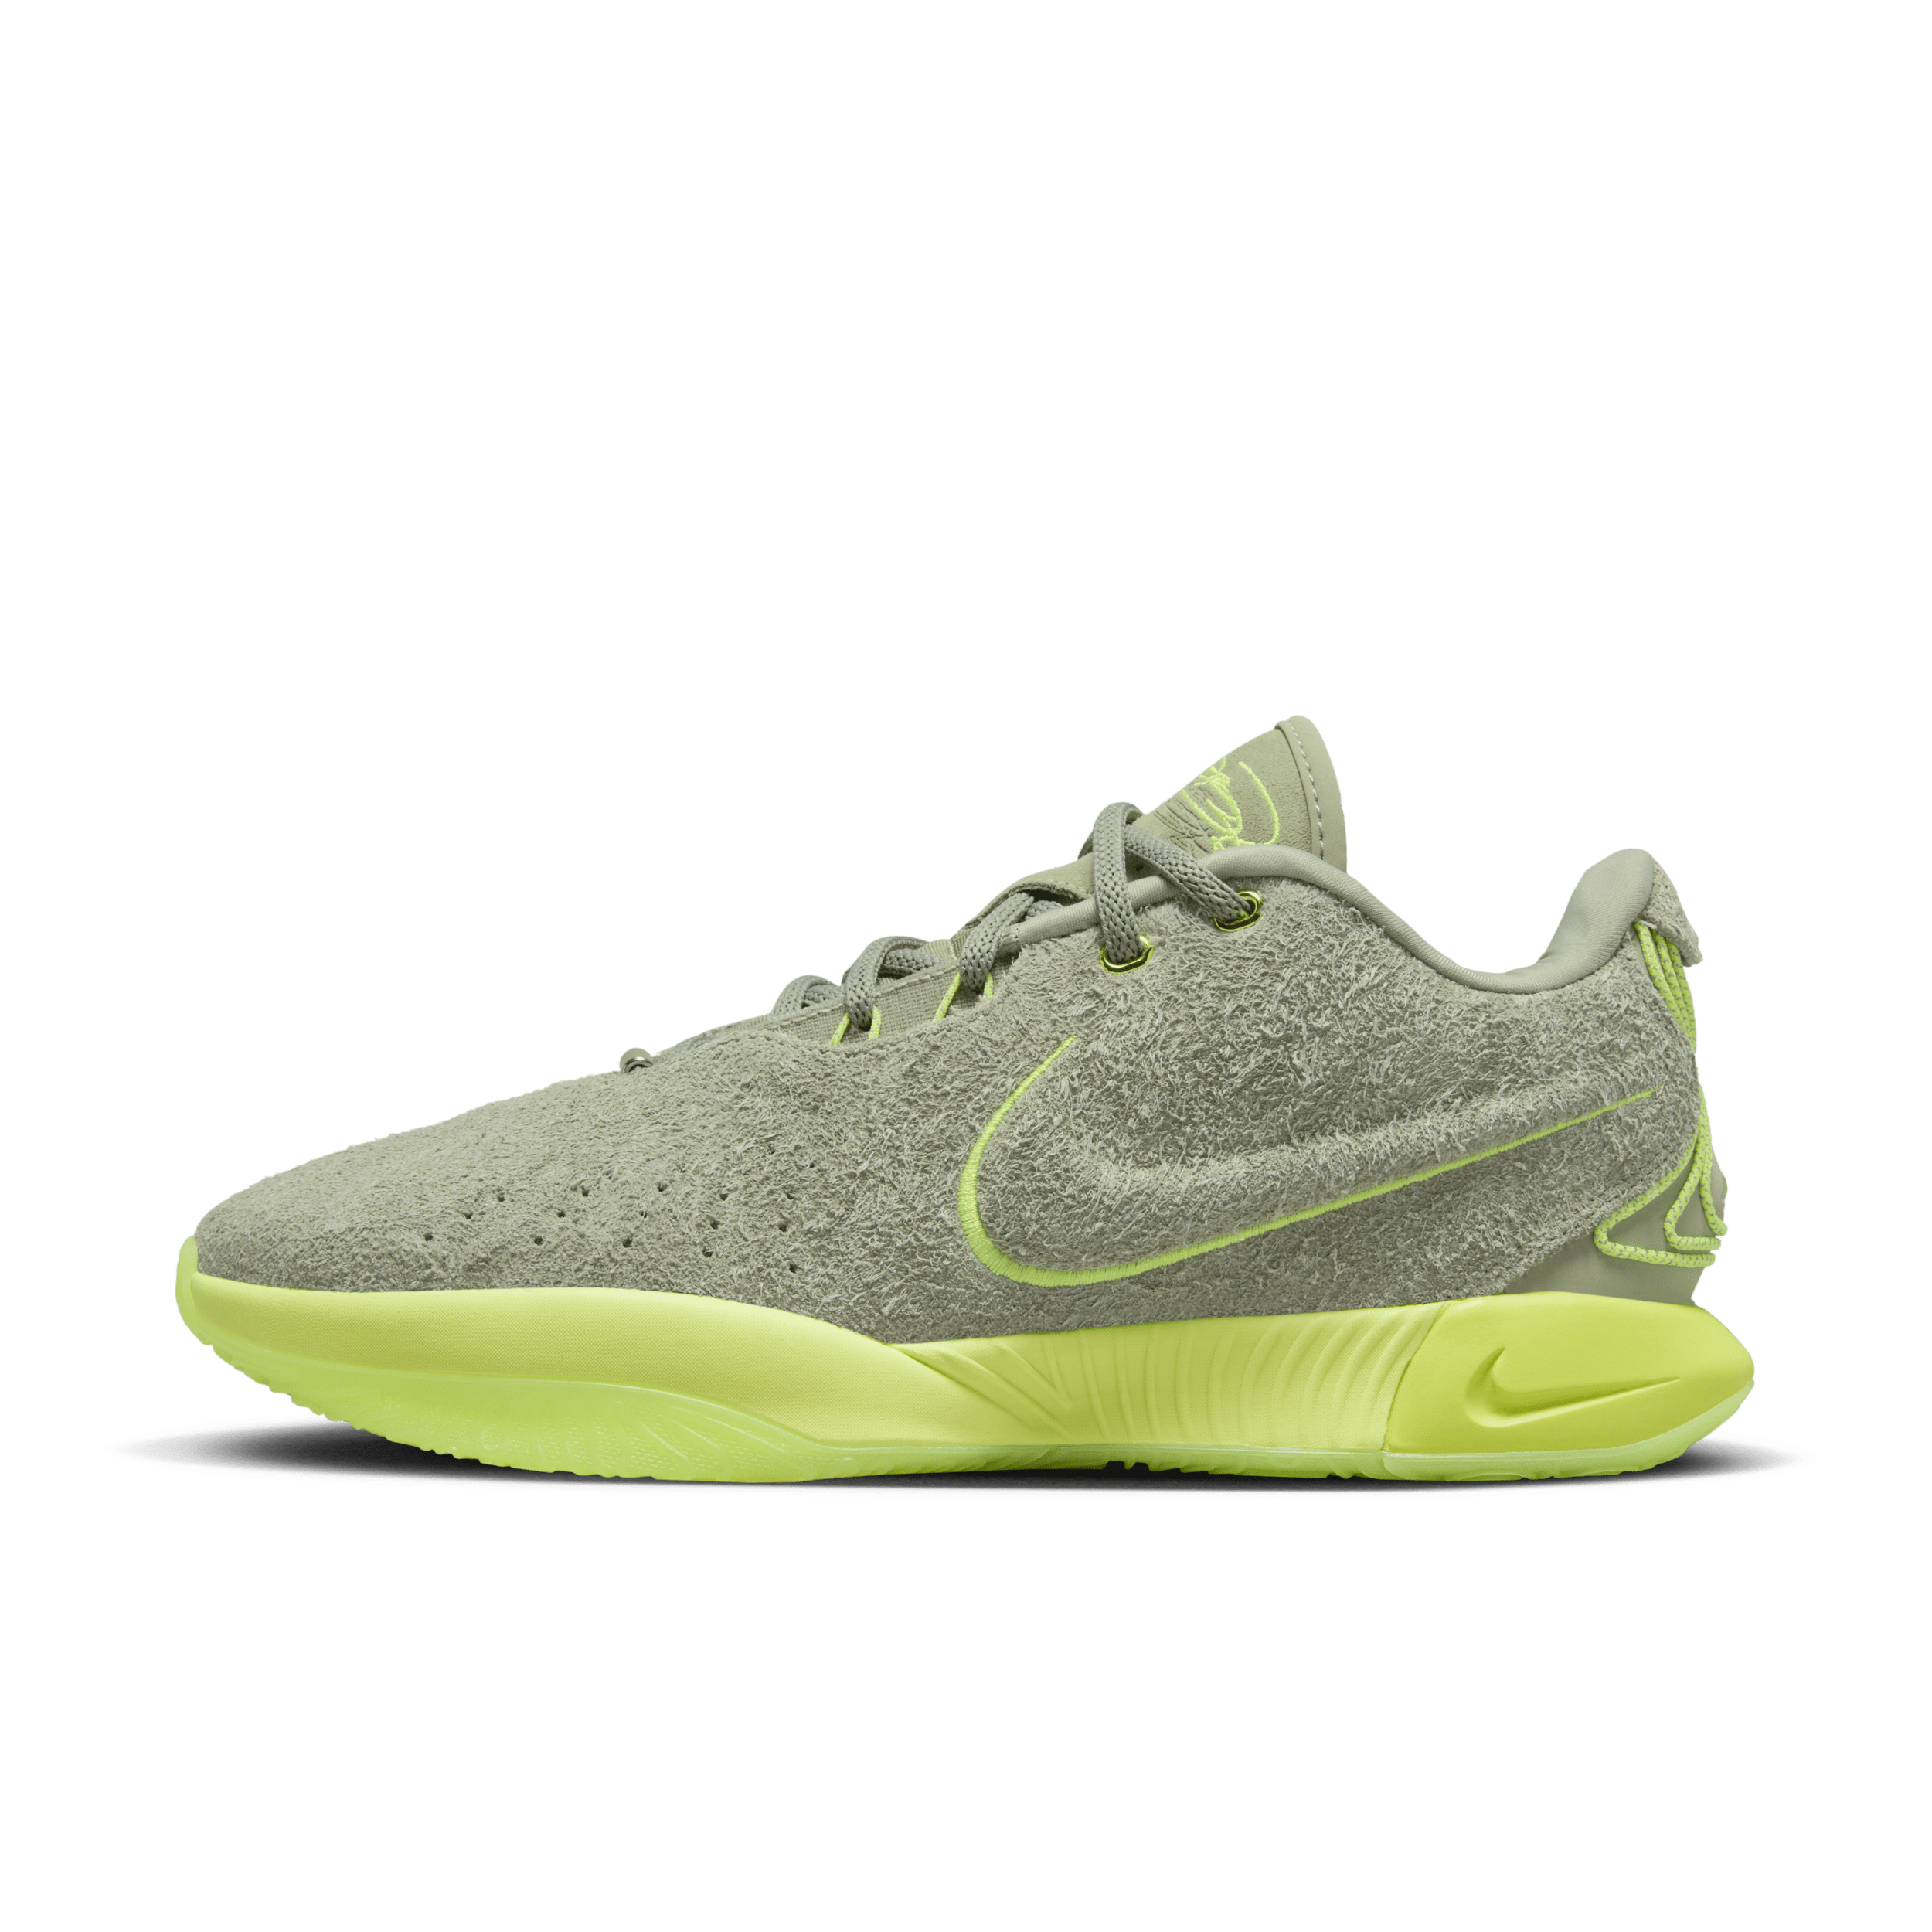 Nike LeBron XXI basketbalschoenen - Groen